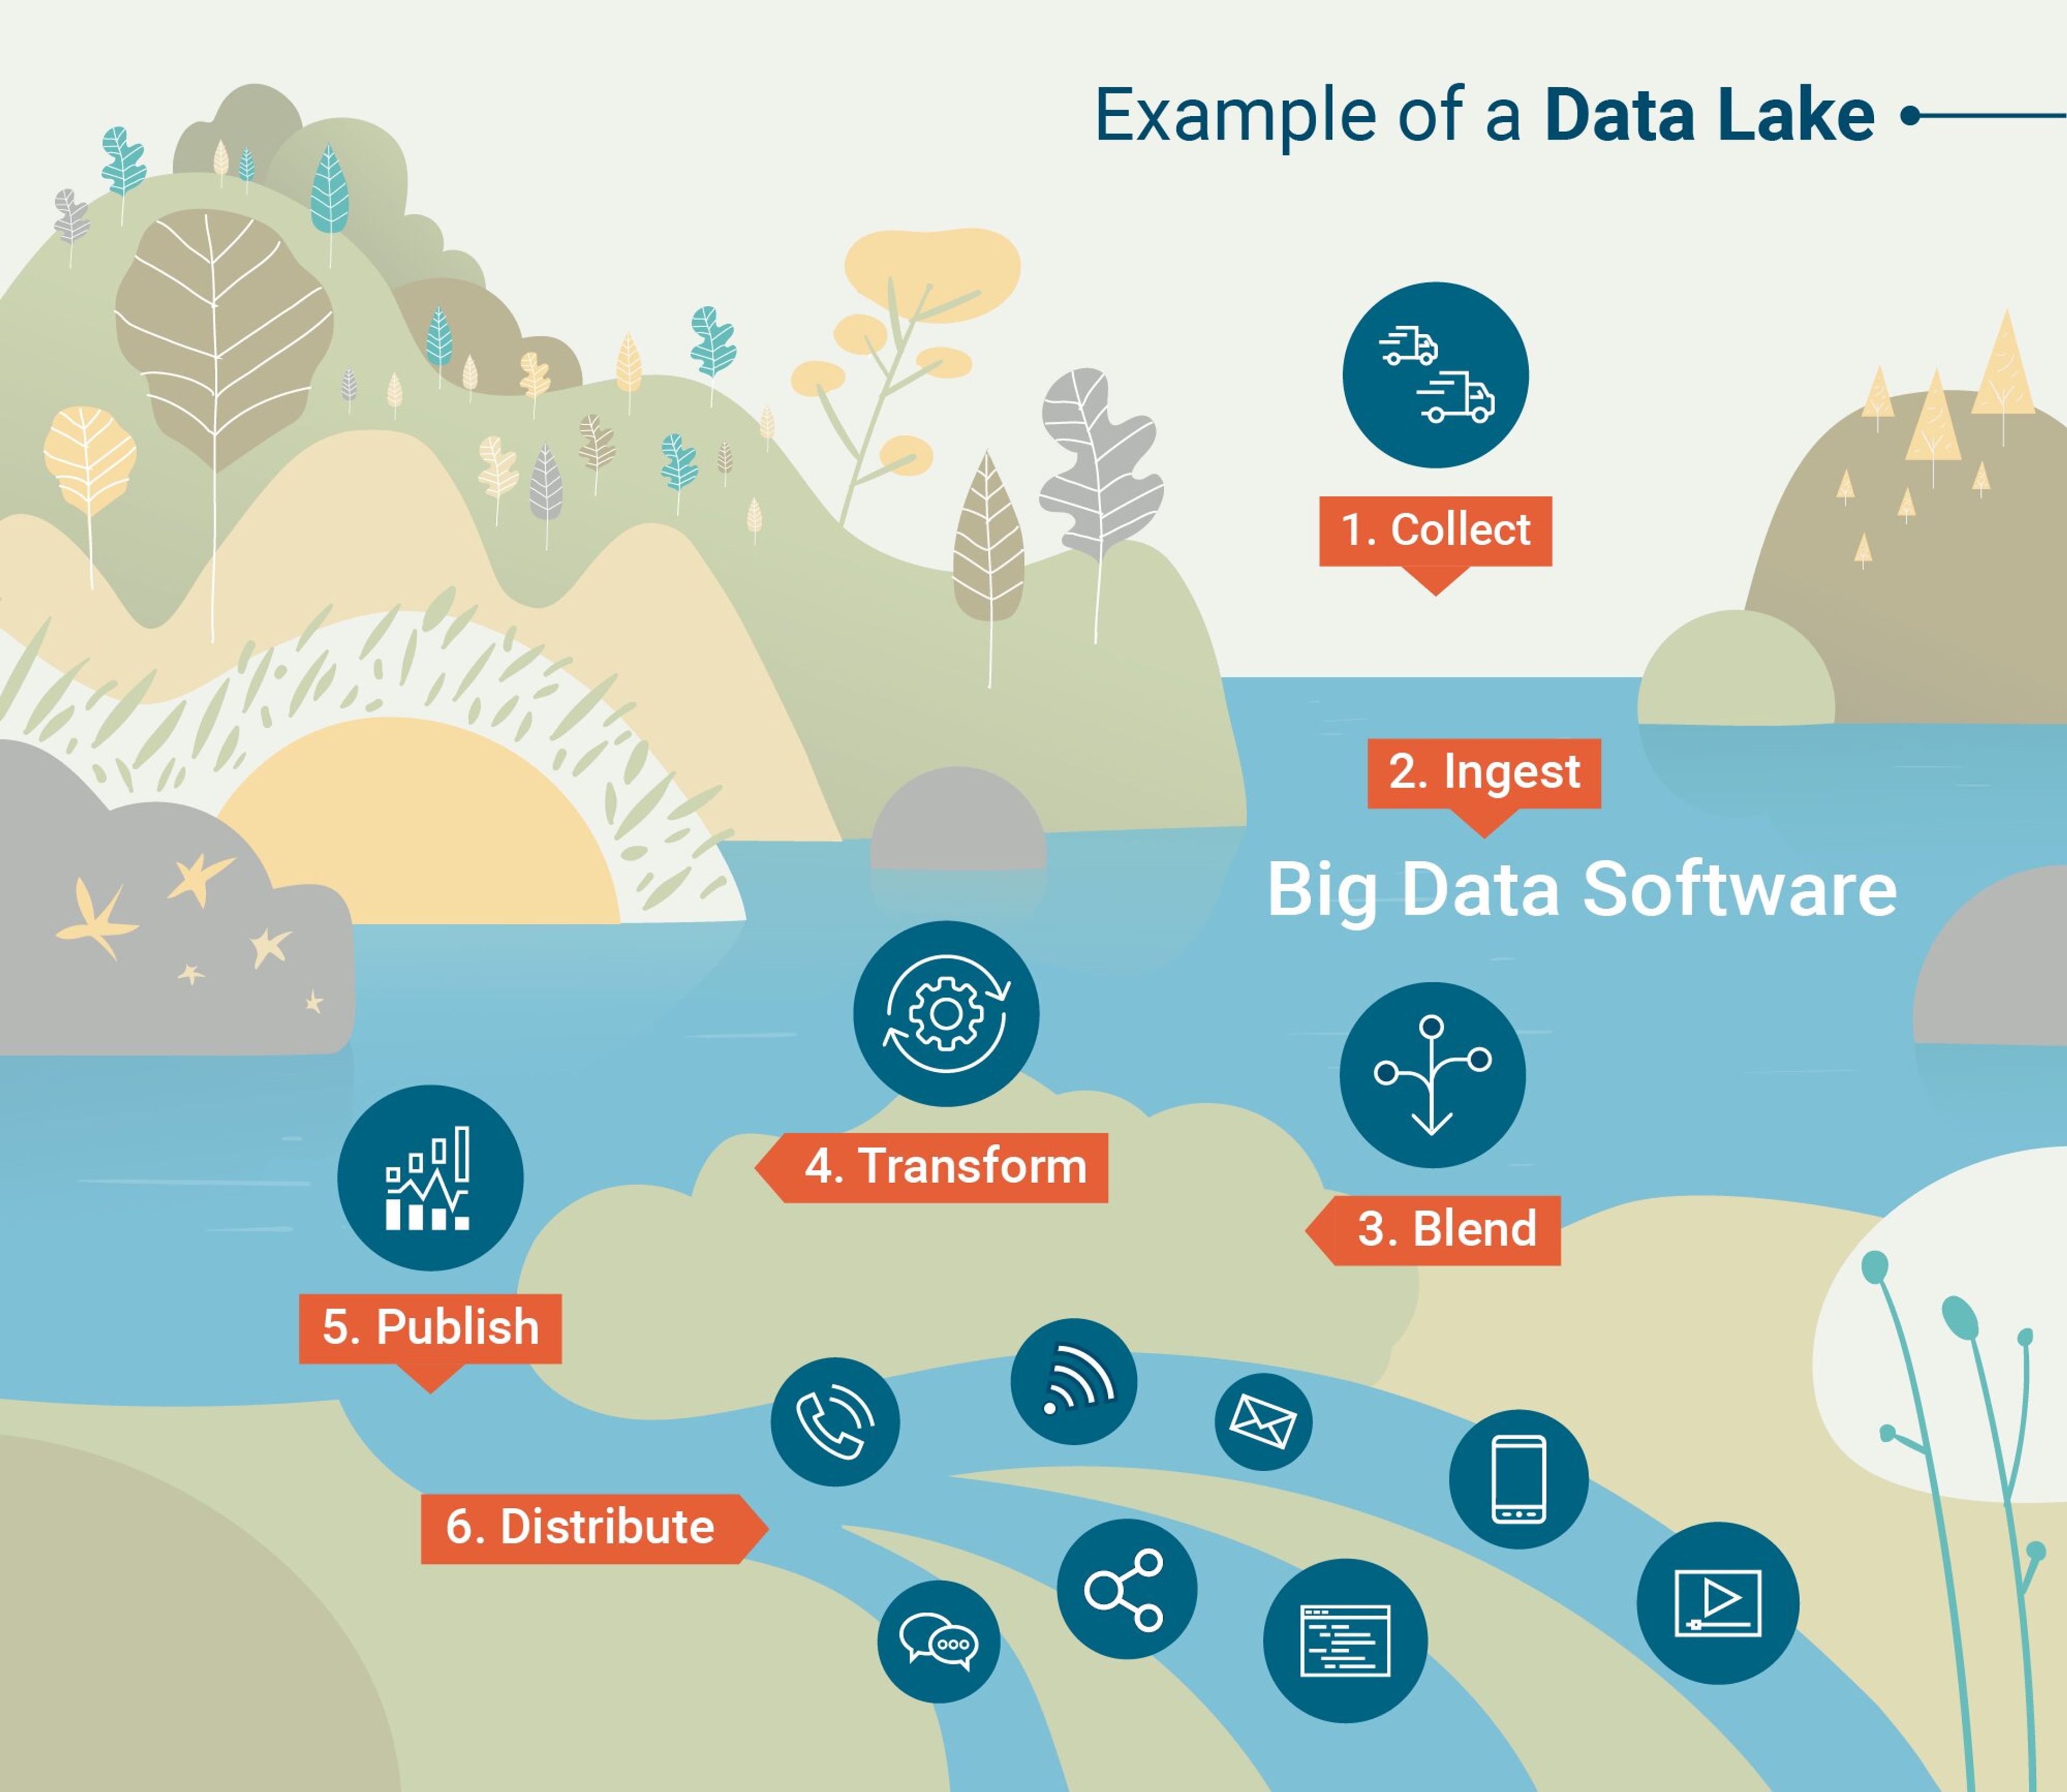 Un Data Lake est une base de données analytiques permettant de déverser des données avec très peu de traitements en amont